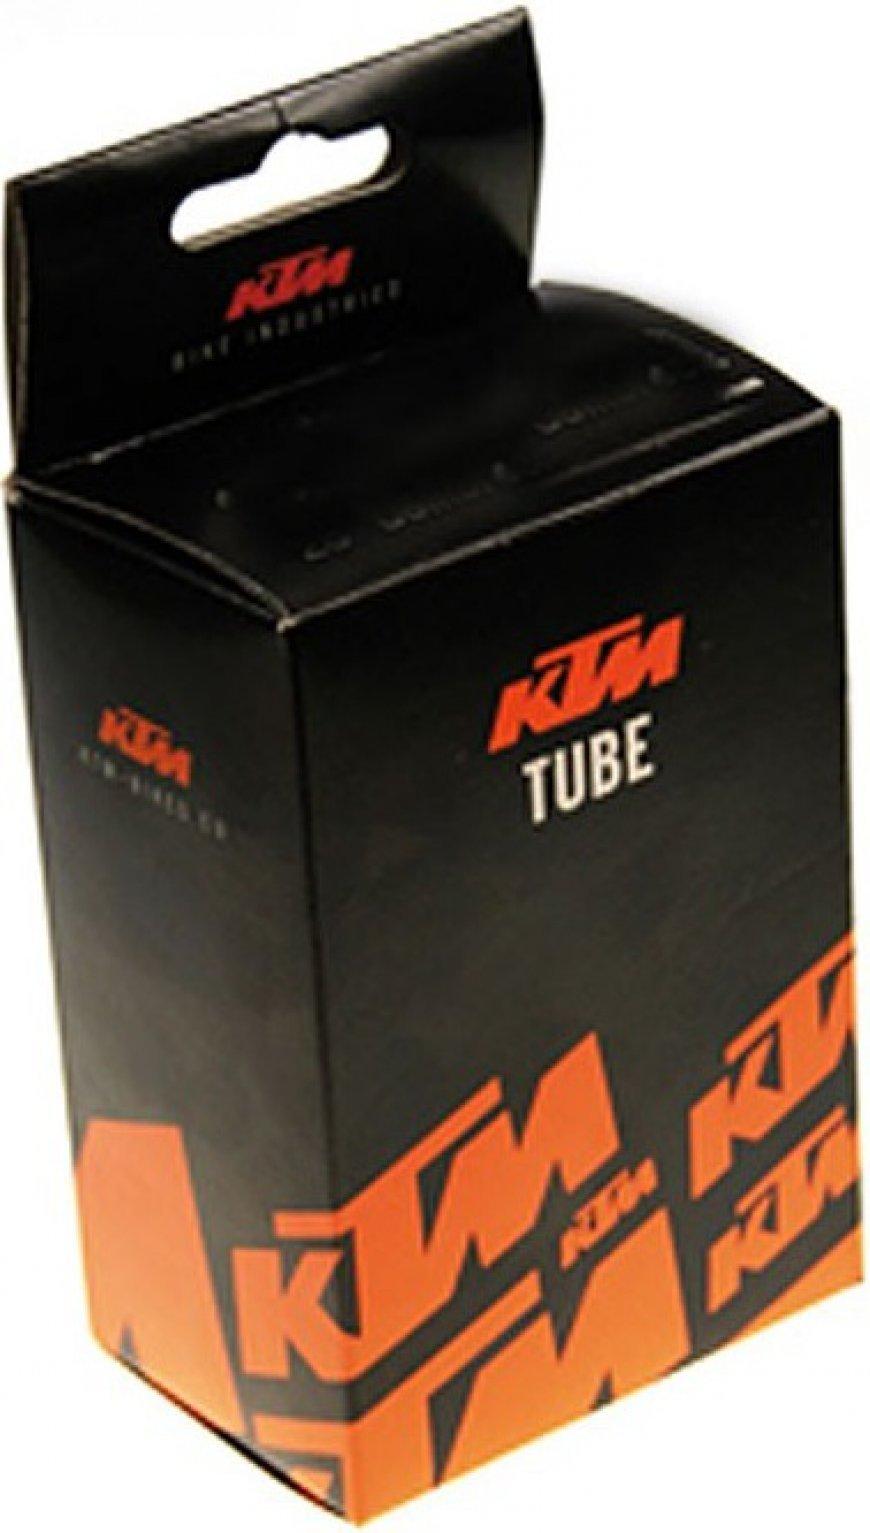 Cyklokomponenty KTM Tube 12\